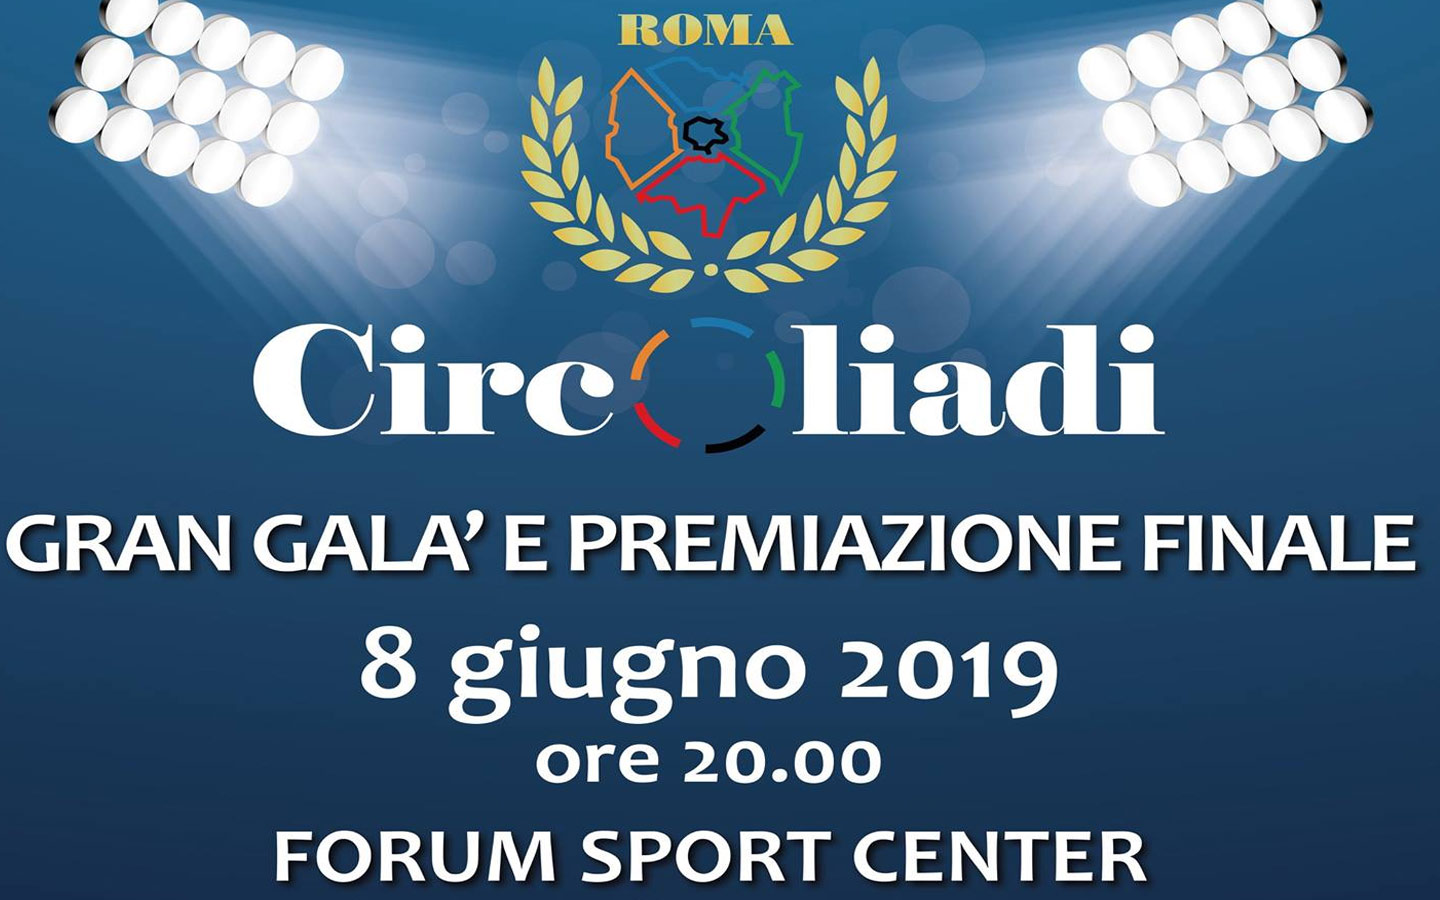 Scopri di più sull'articolo Circoliadi 2019, Forum Sport Center – evento di chiusura.